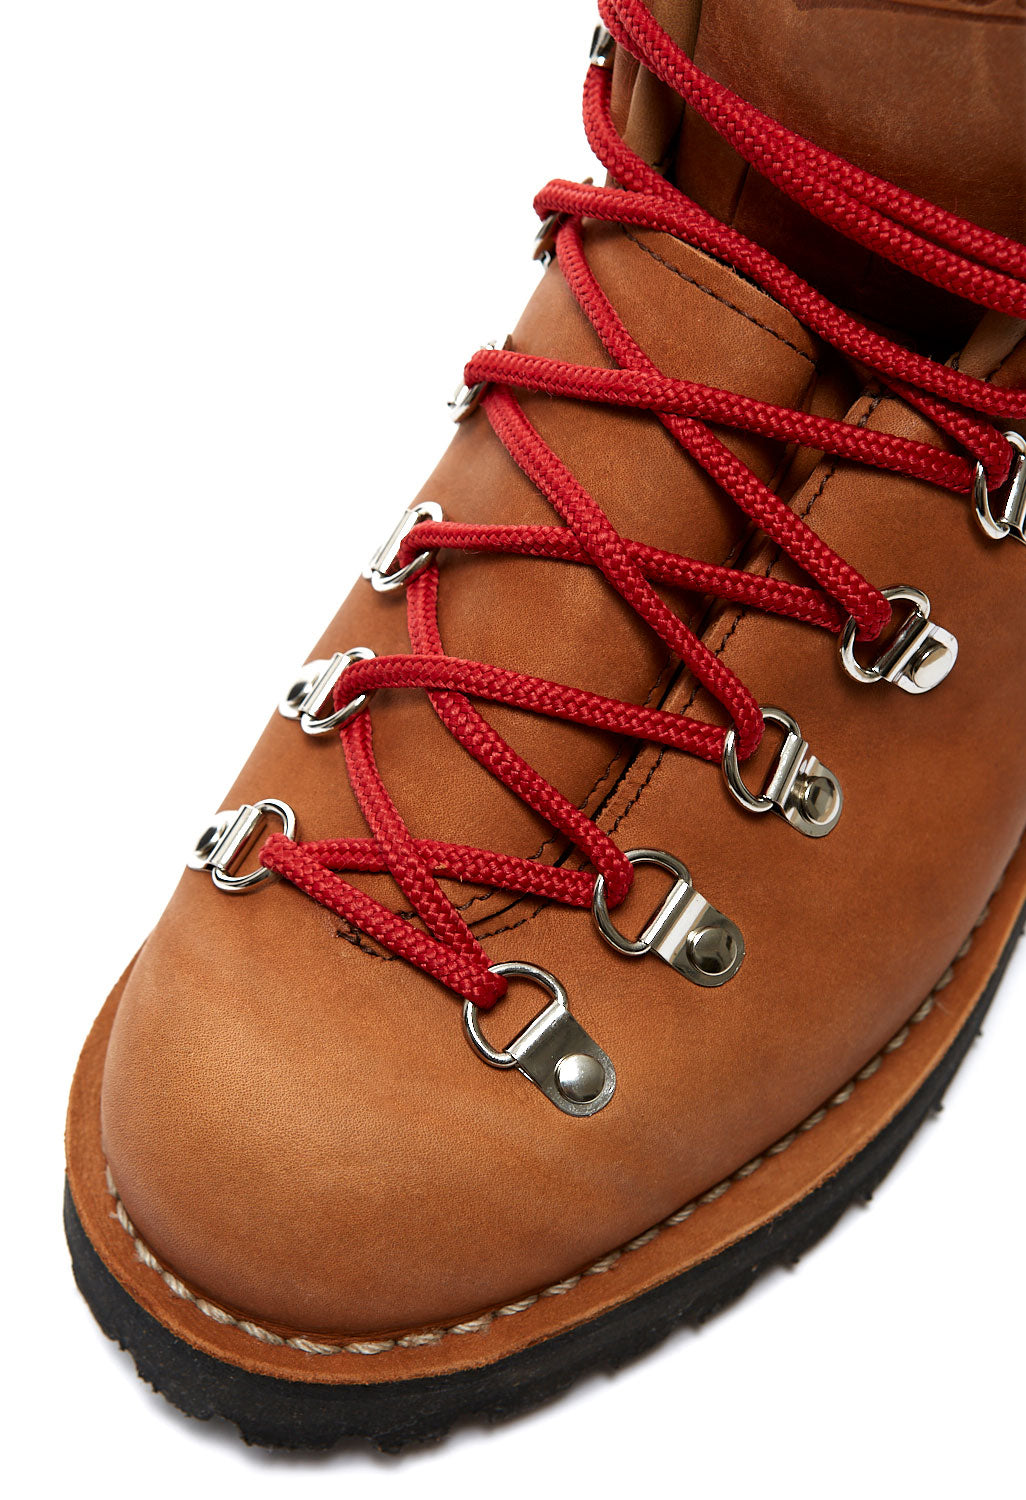 Danner Mountain Light Men's Boots - Cascade Clovis